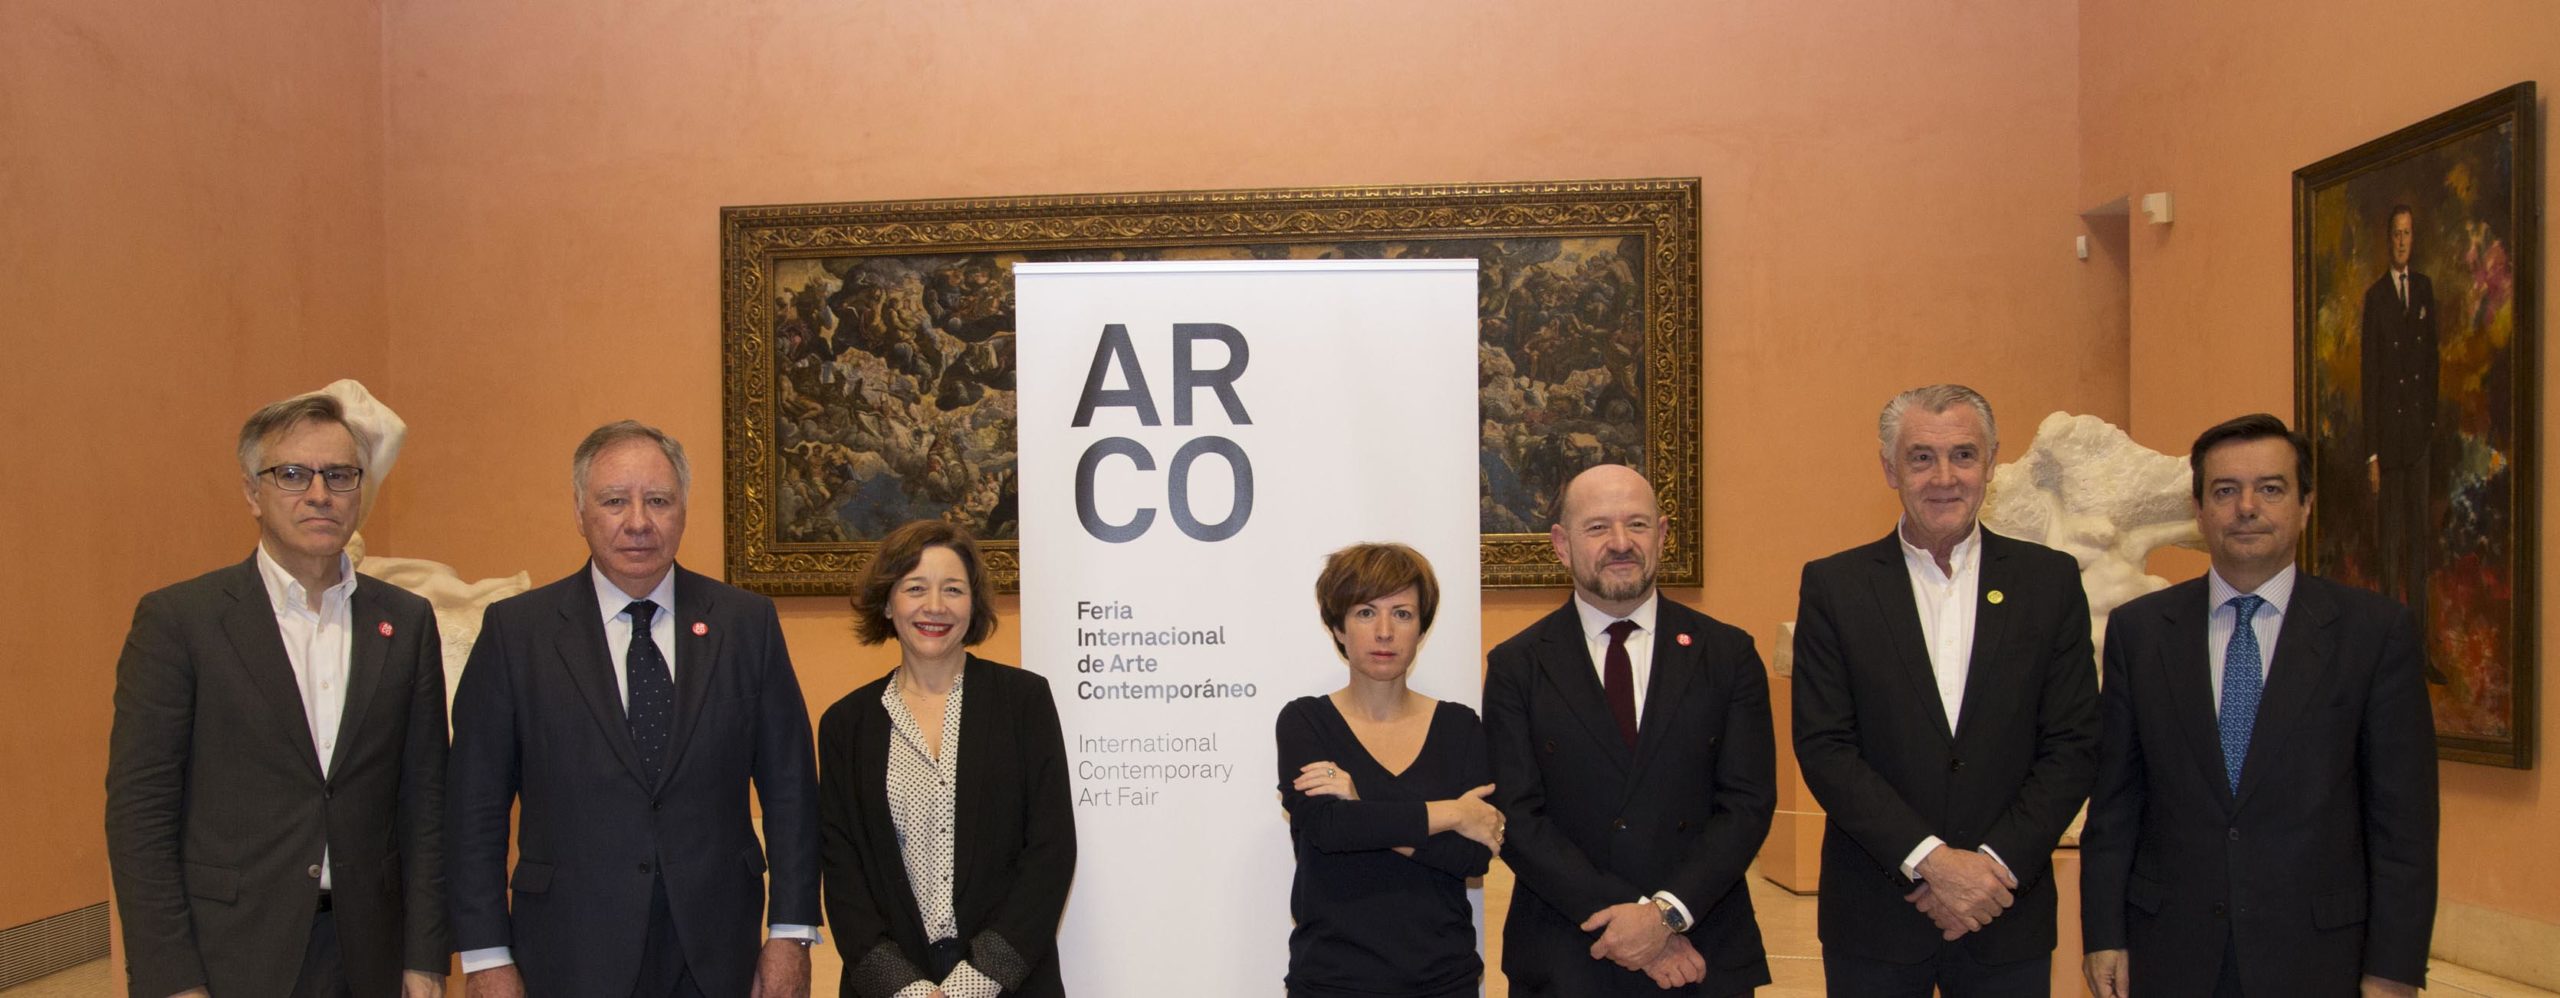 ARCOmadrid 2018 sacrifica el país invitado y presenta una sección nueva